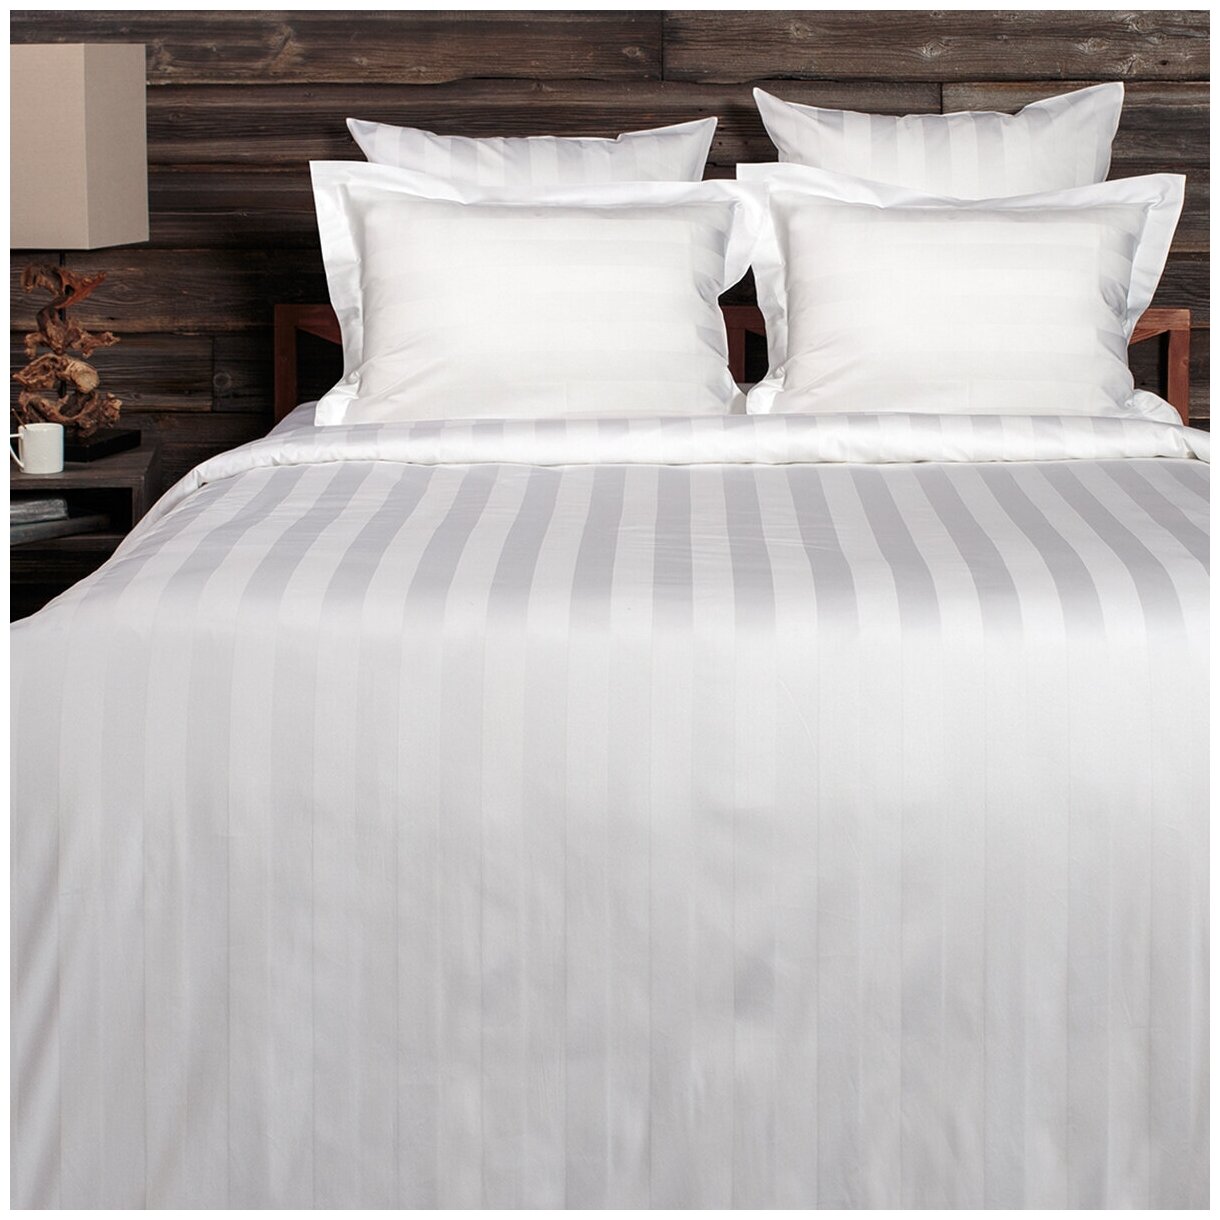 Комплект постельного белья La Prima постельное бельё мако-сатин белоснежный, размер 2 спальный (175x215см) - фото №1